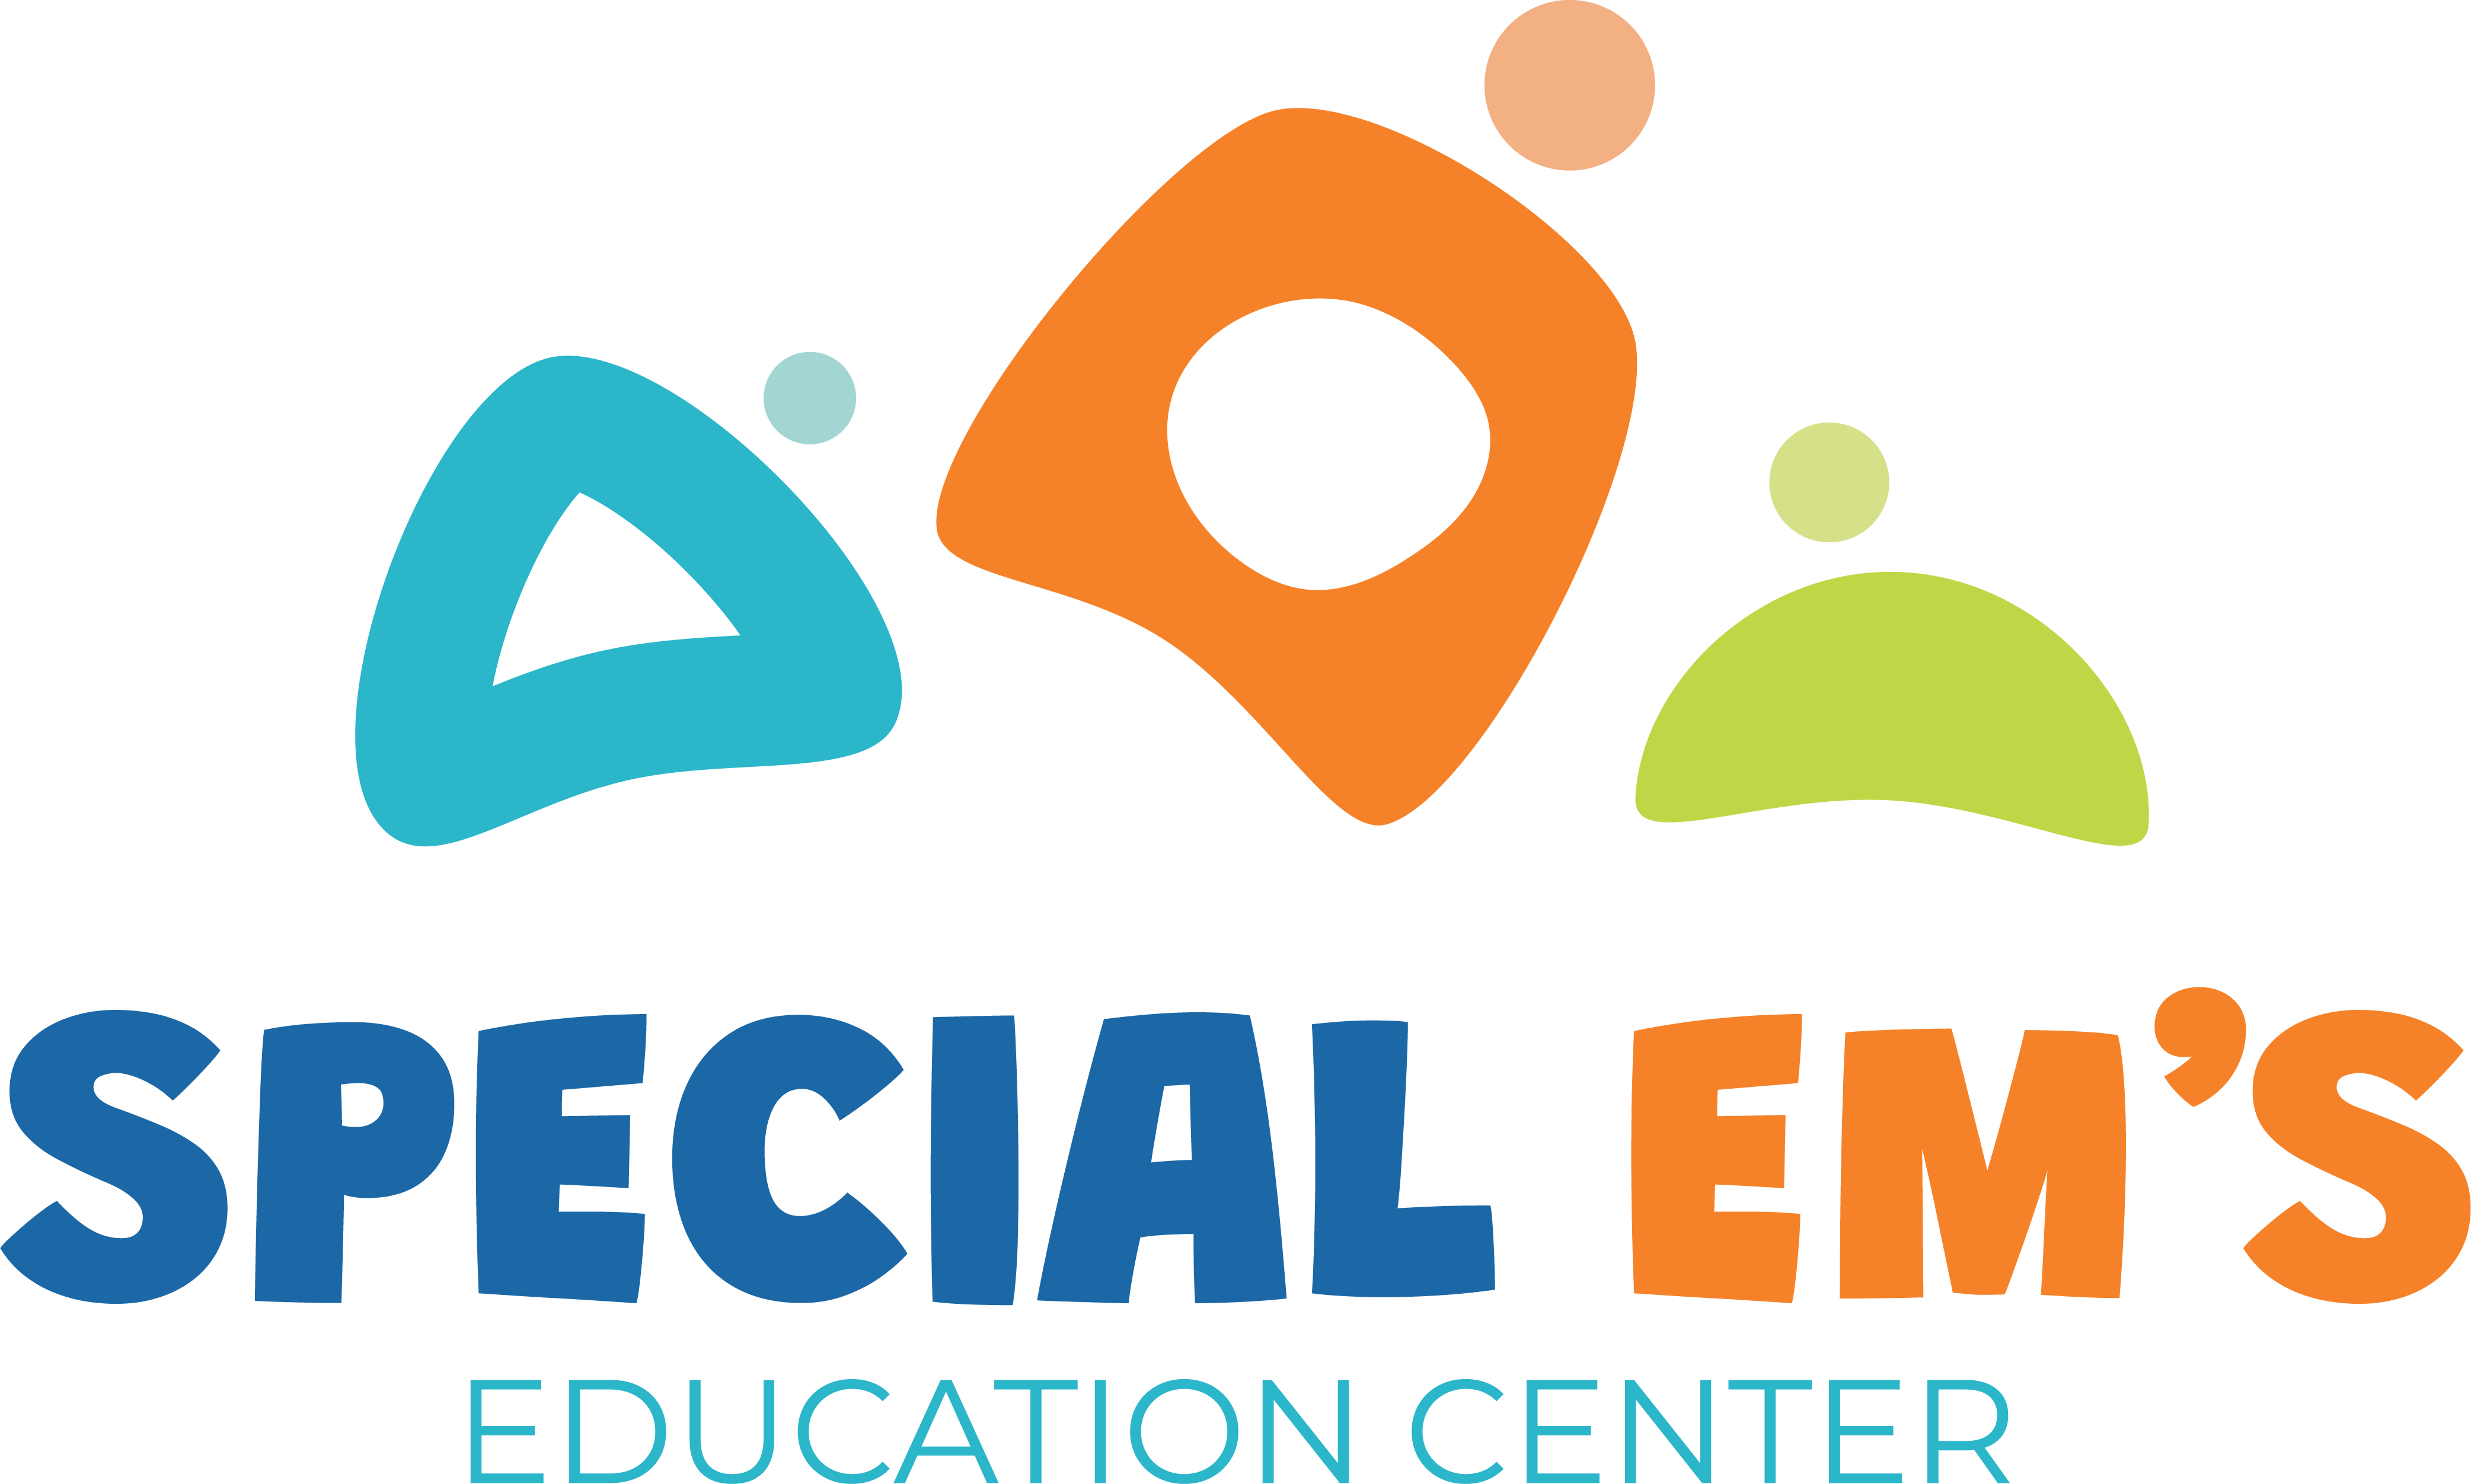 Special Em's Education Center